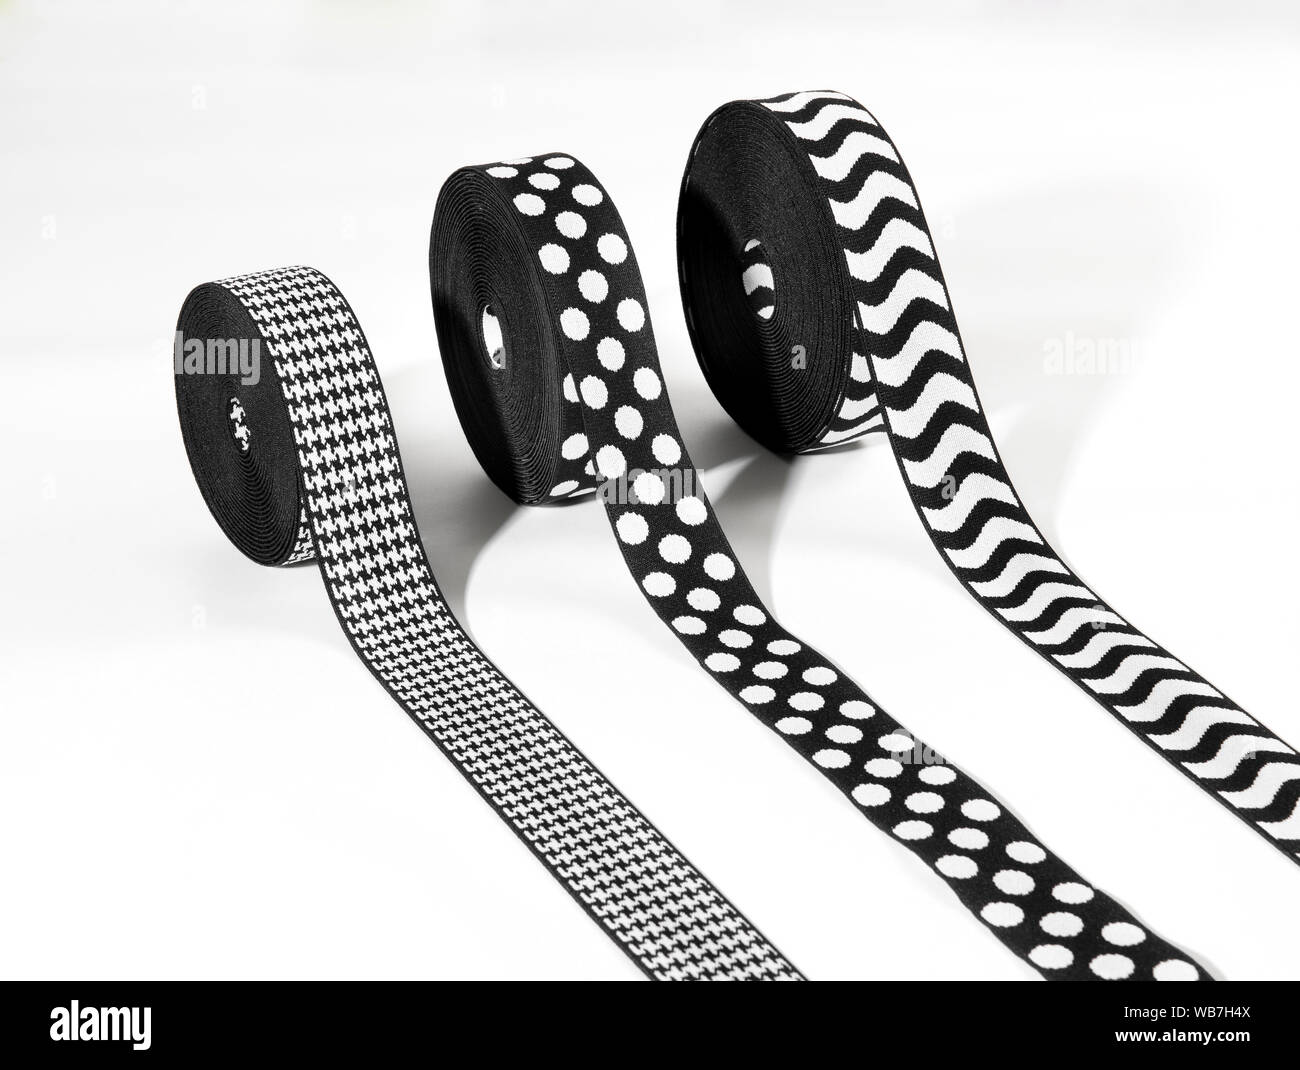 Drei Rollen von dekorativen schwarzen und weißen elastische Bänder oder Bänder mit Fischgrätmuster, Polka Dot und gewellten Streifen Muster angezeigt, auf einem weißen backgroun Stockfoto